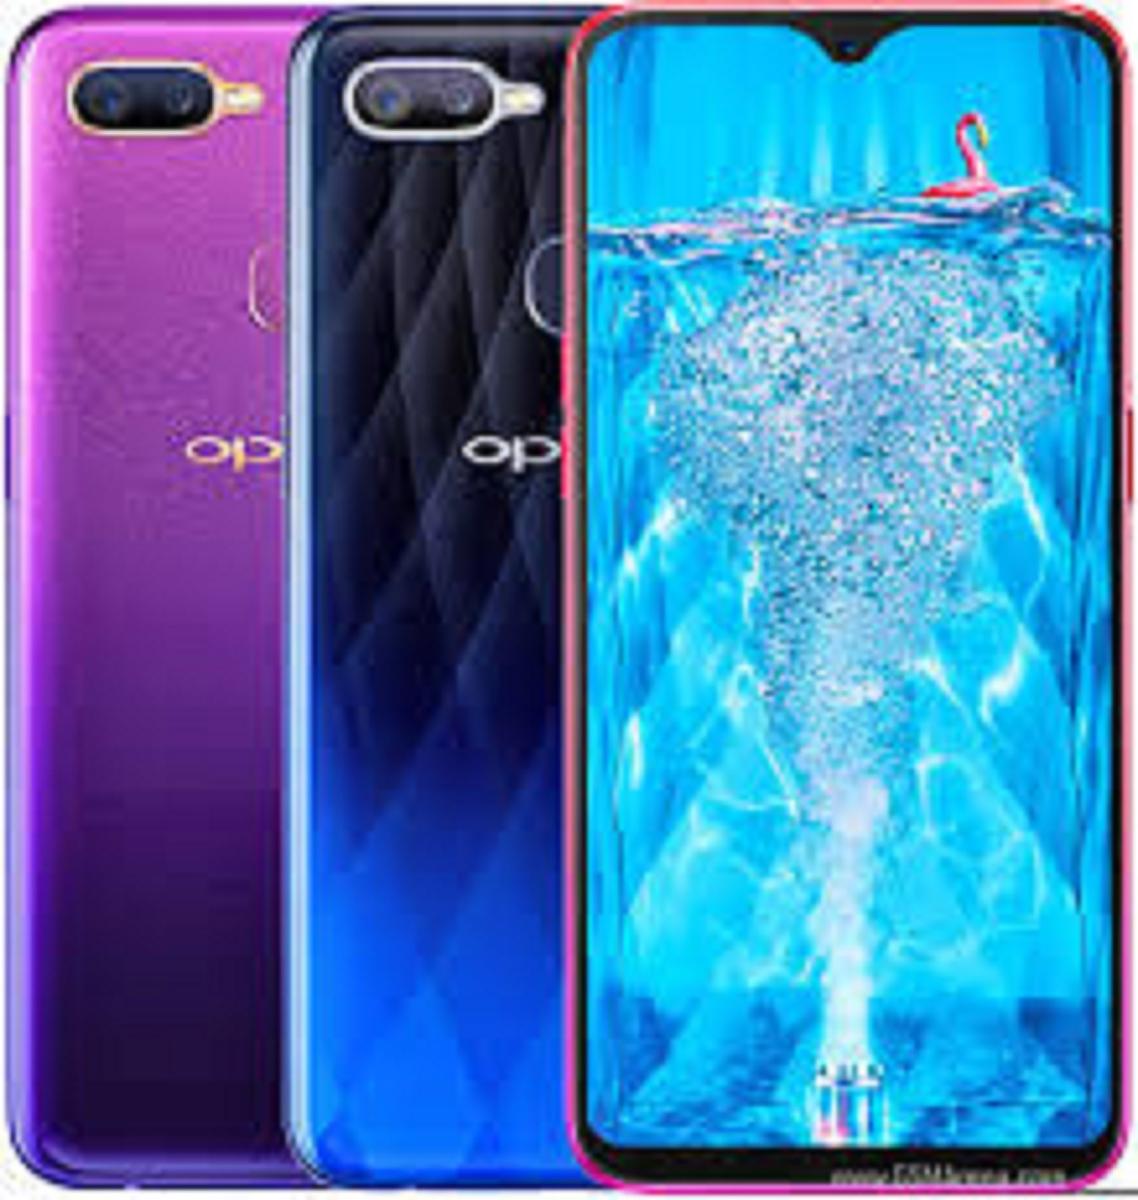 Oppo blue glass HD phone wallpaper  Peakpx